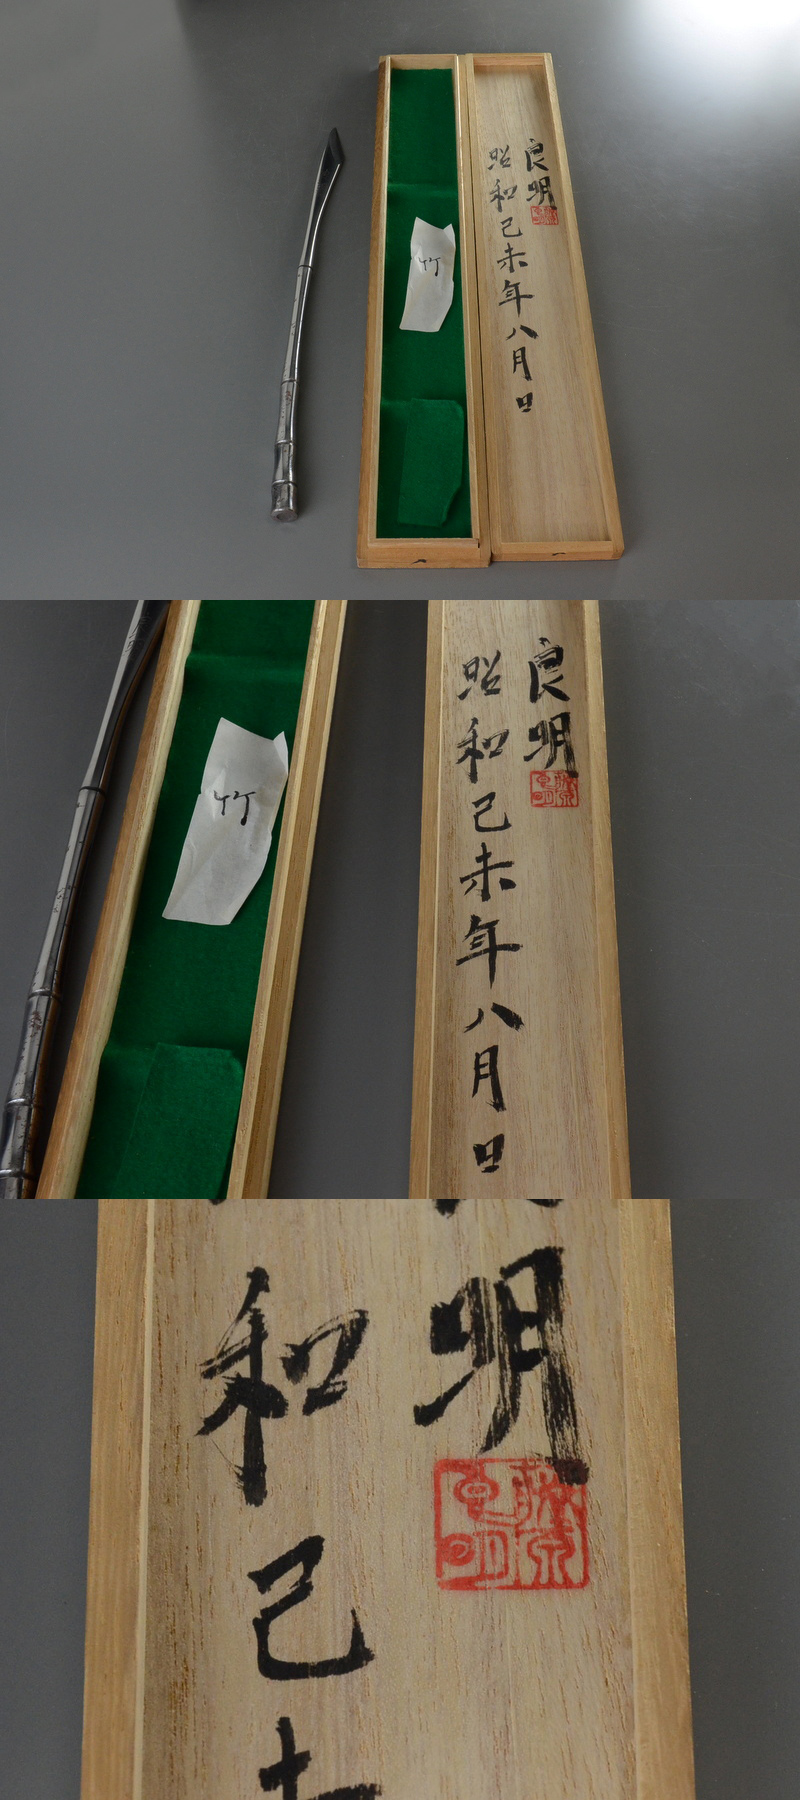 日本新品藤原良明作 「竹」 切出し/小刀 箱付 大工道具■送料無料■05n502 大工道具一般